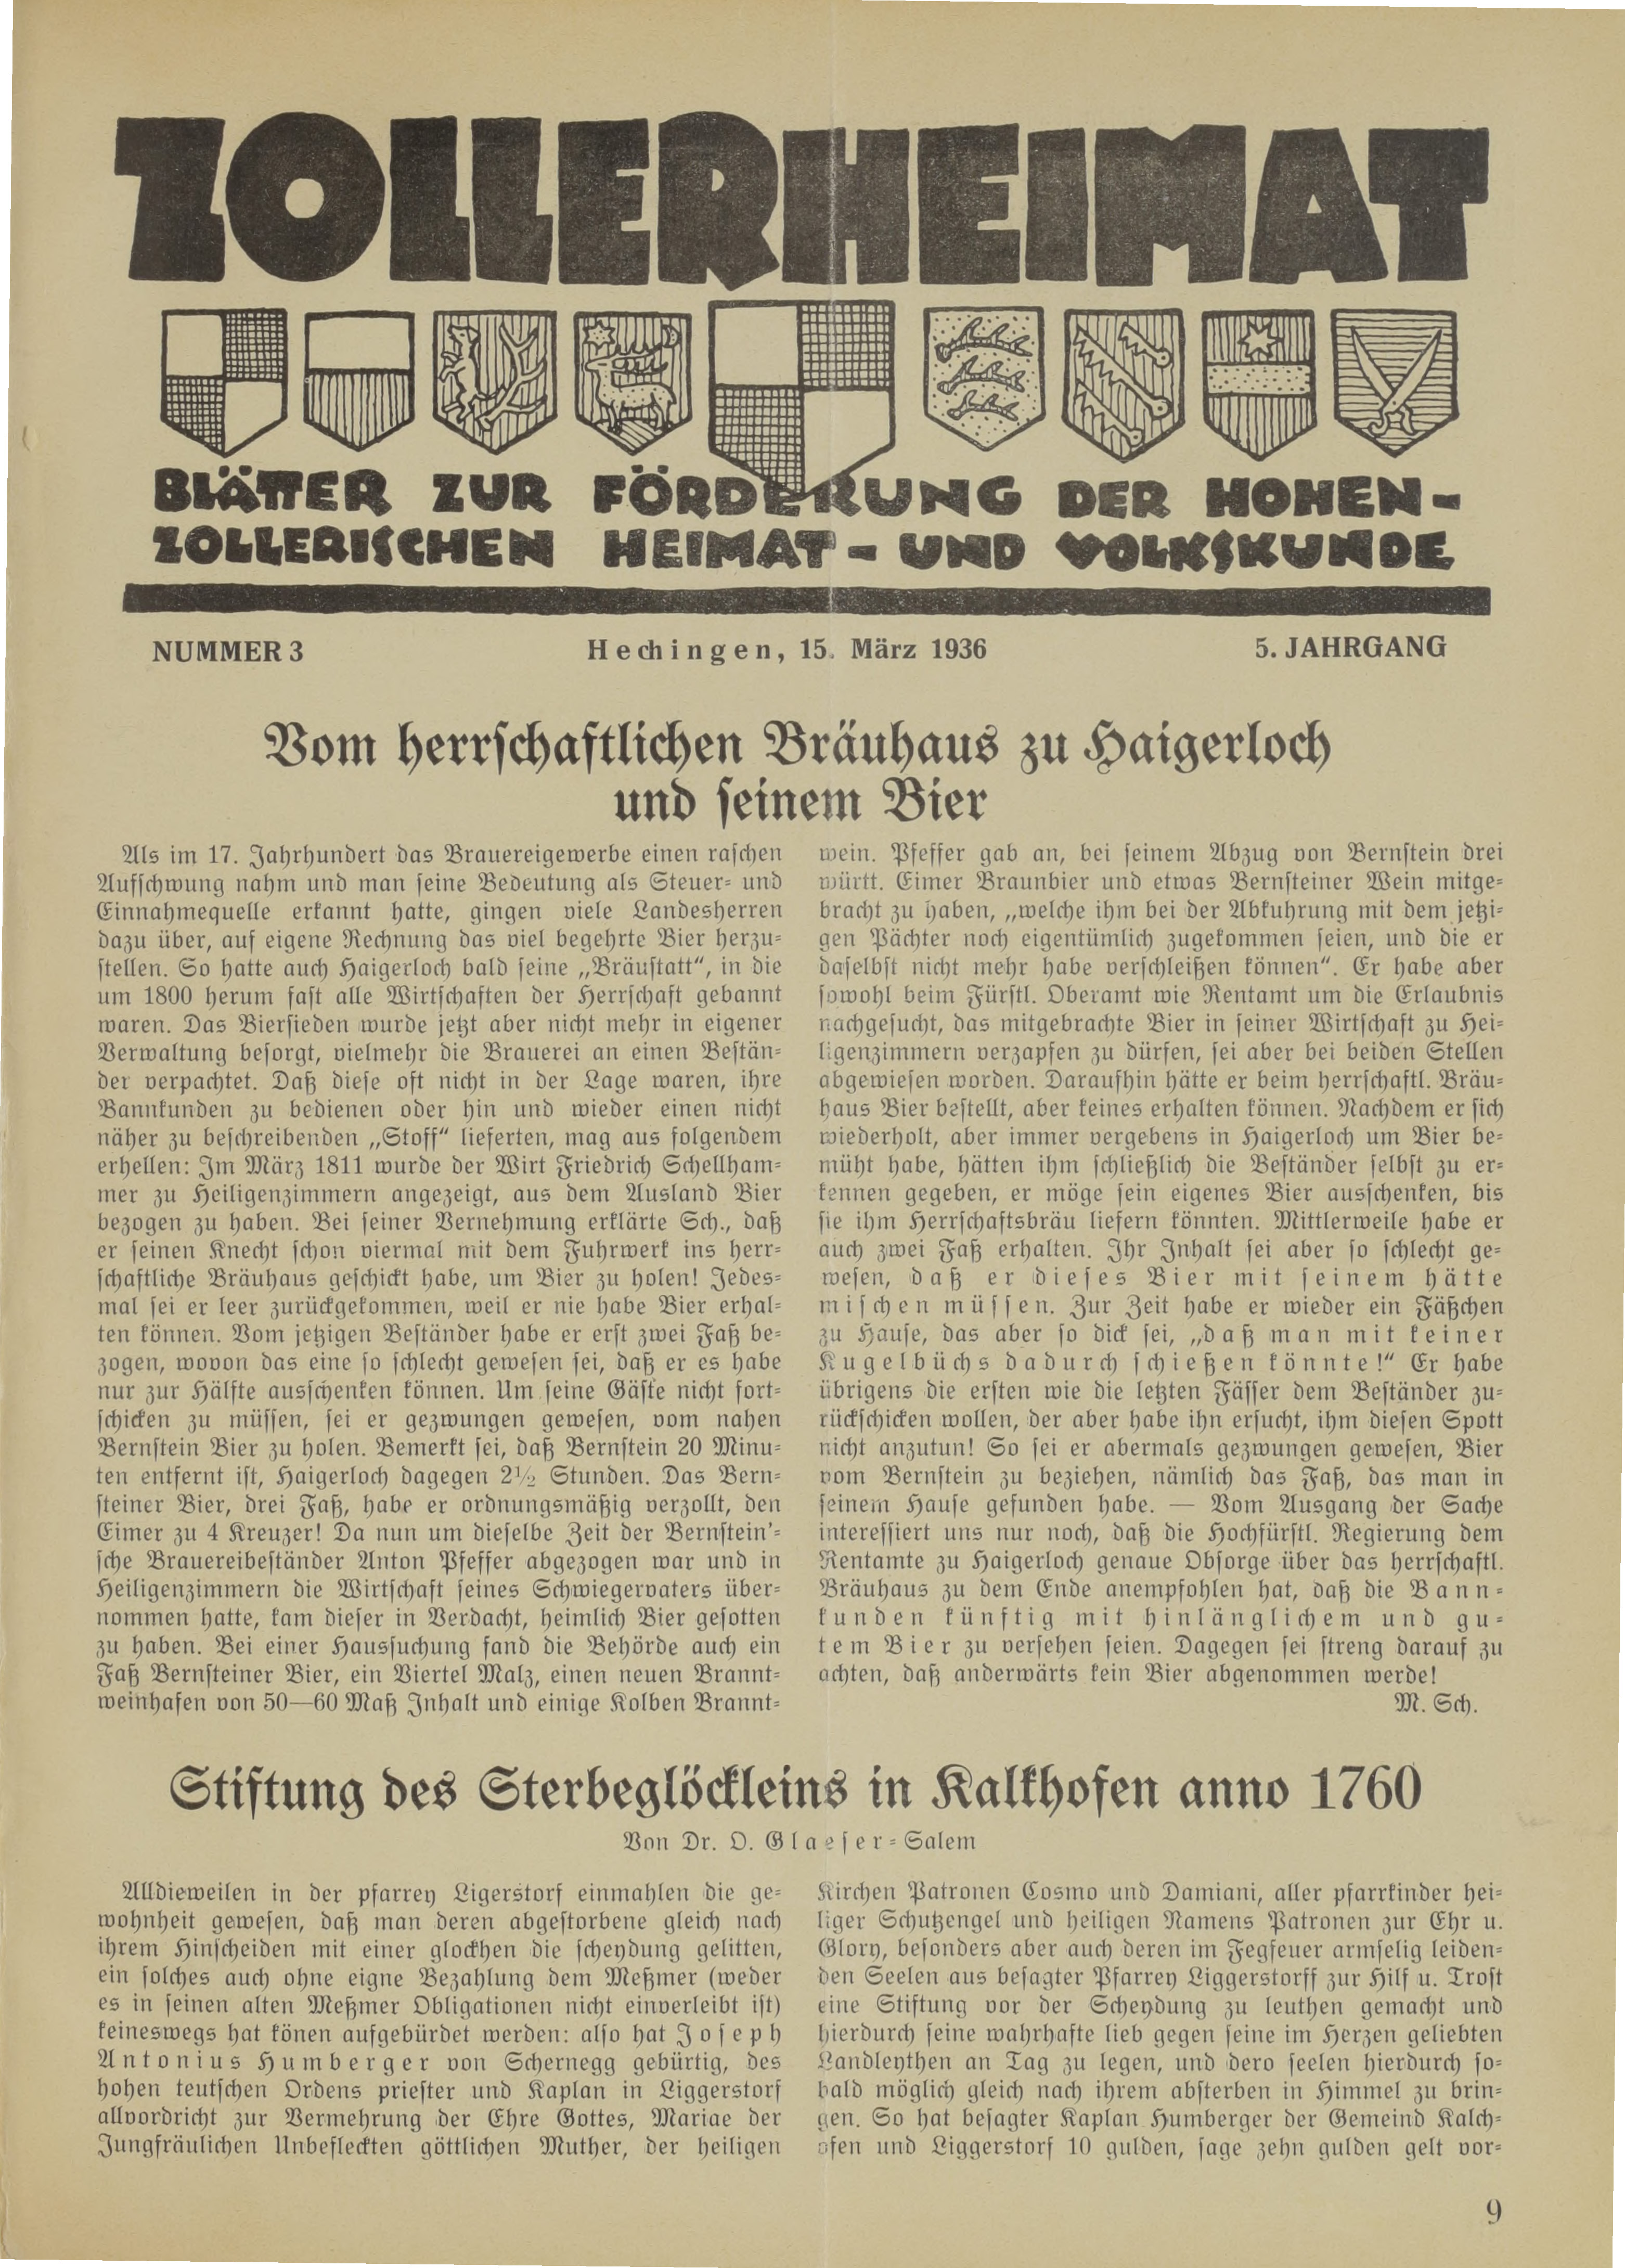                     Ansehen Bd. 5 Nr. 3 (1936): Zollerheimat
                